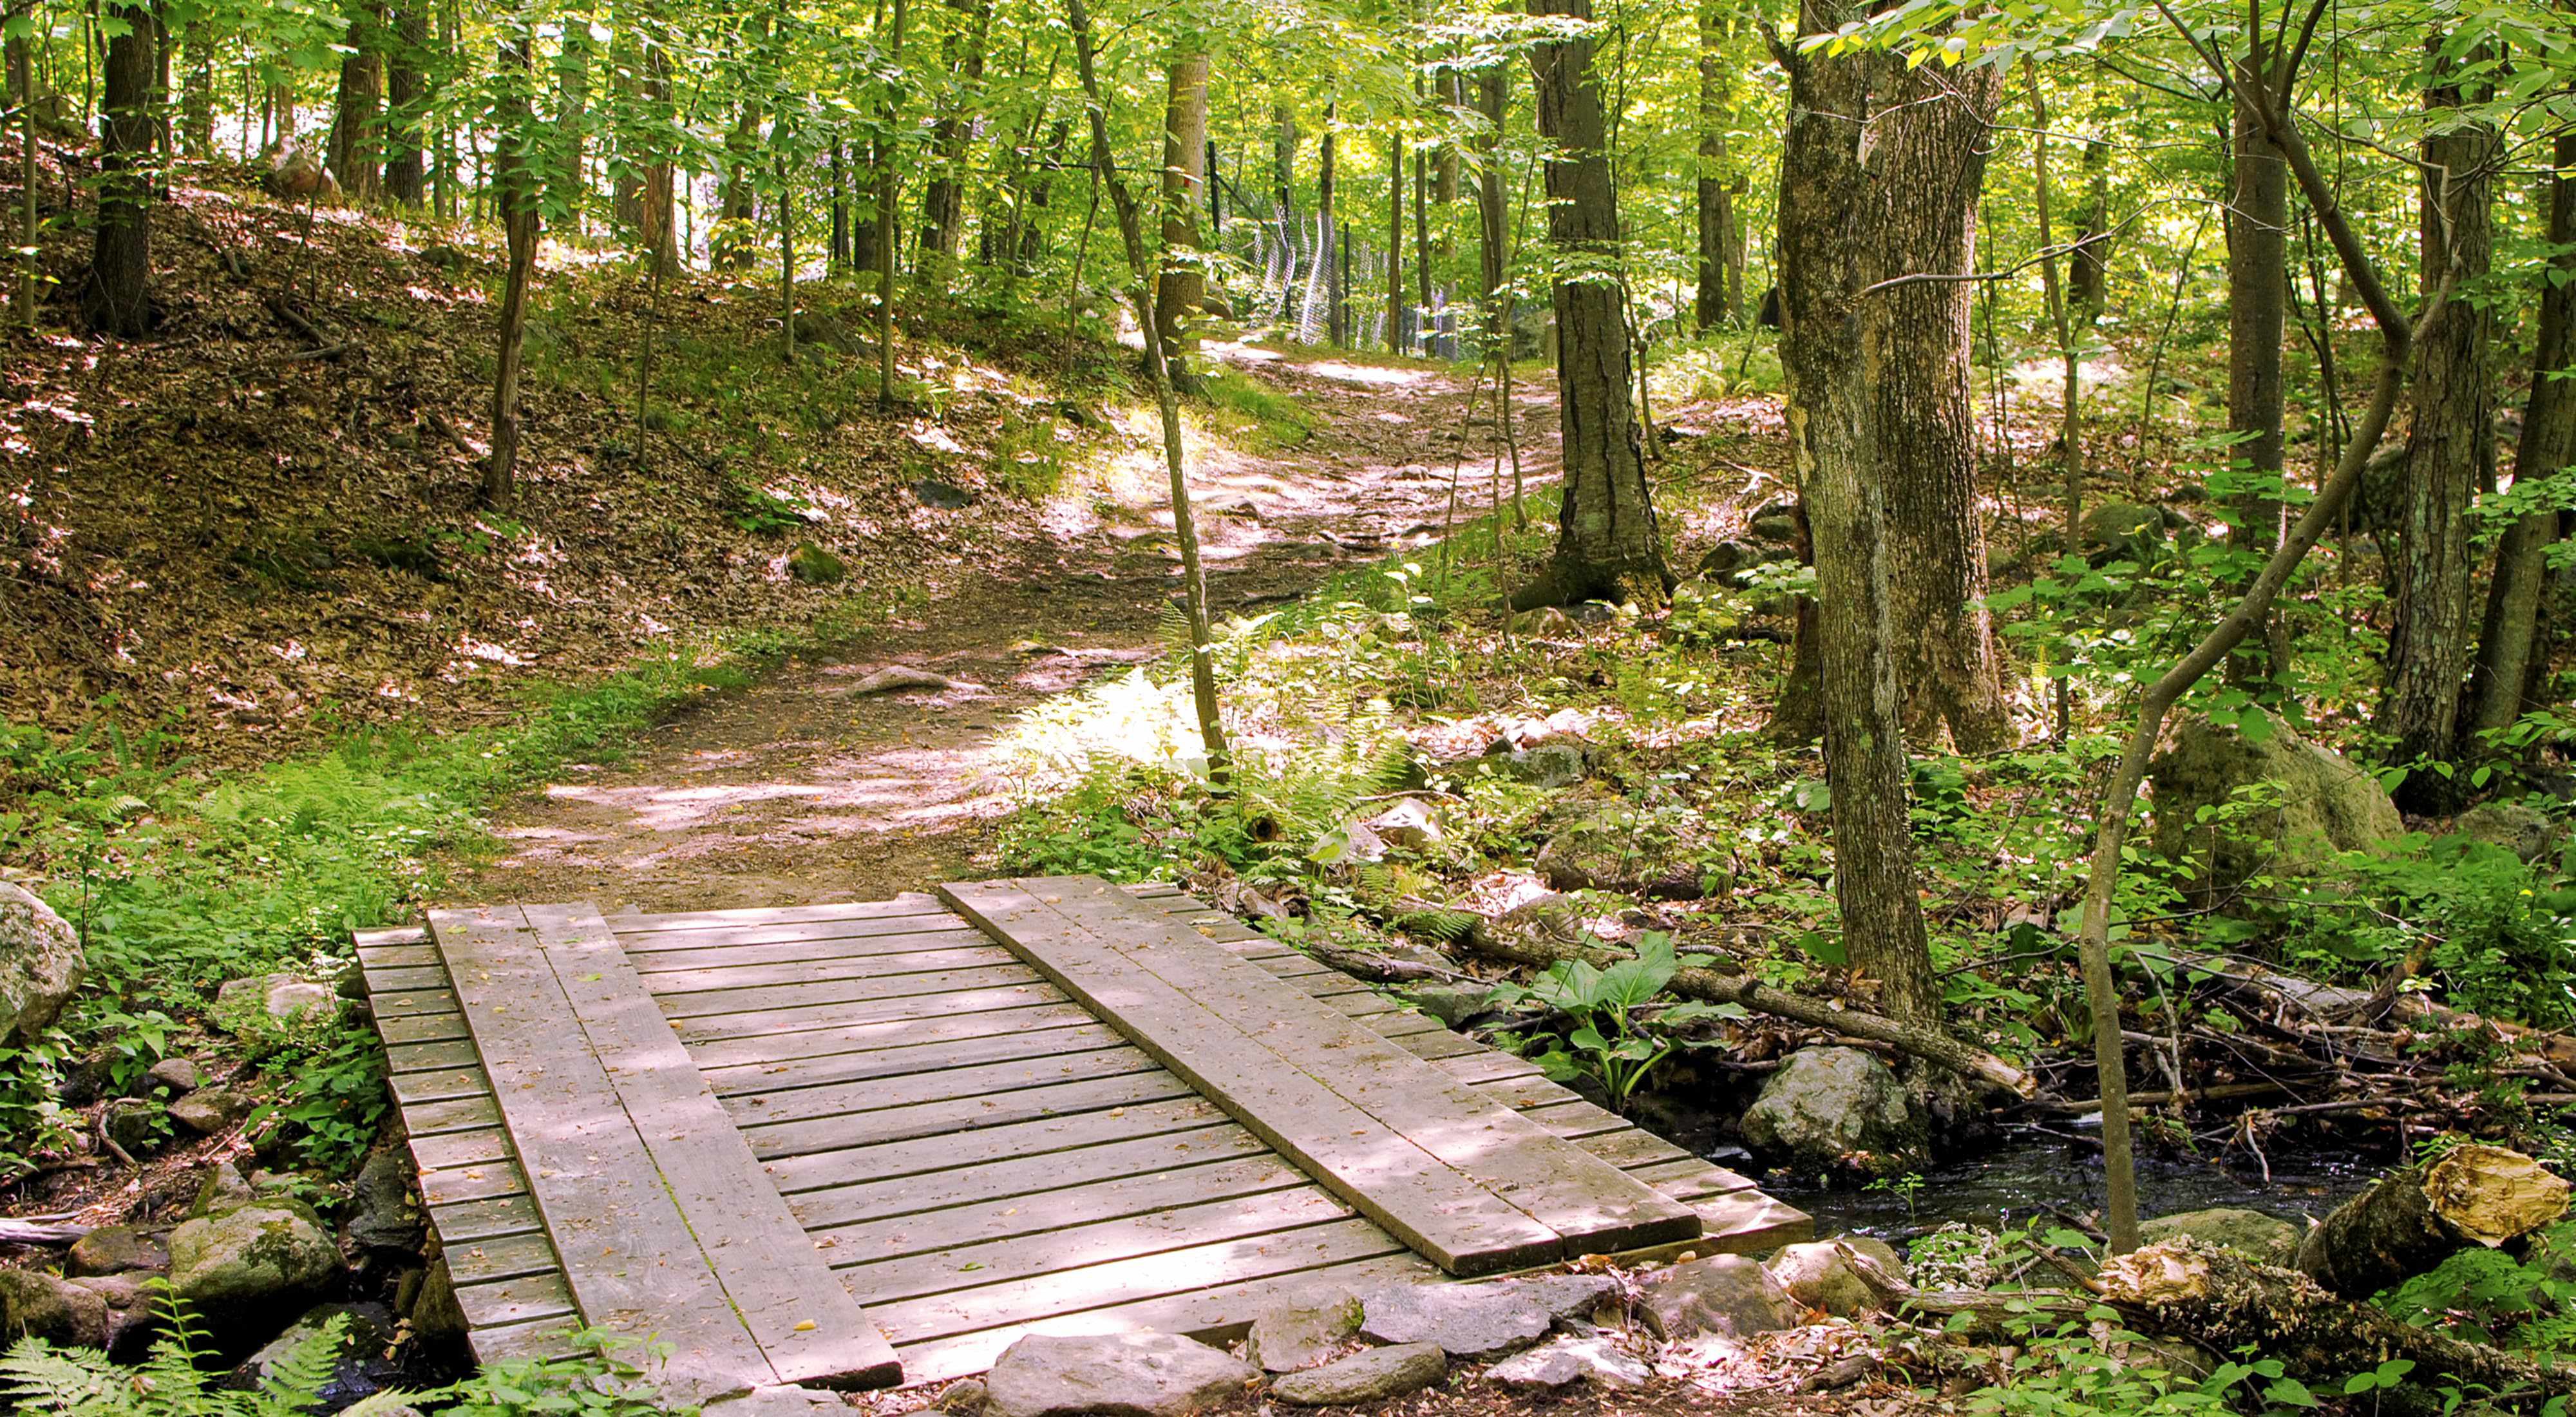 Un puente peatonal de madera sobre un pequeño arroyo lleva a un sendero que atraviesa un bosque frondoso.